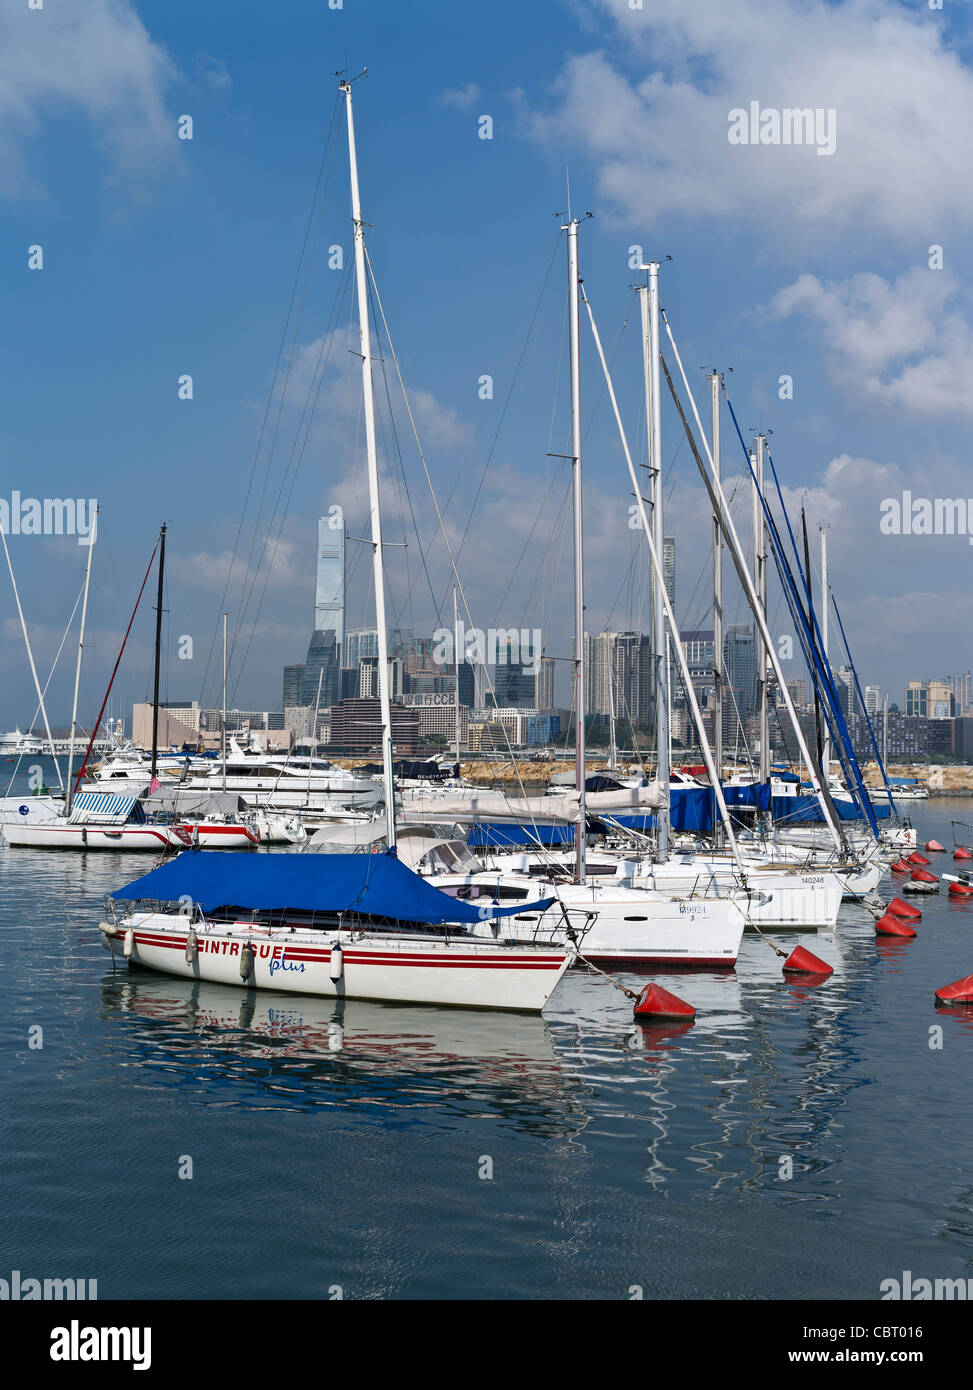 dh  CAUSEWAY BAY HONG KONG Royal Hong Kong Yacht club sailing boats in anchorage marina yachts Stock Photo